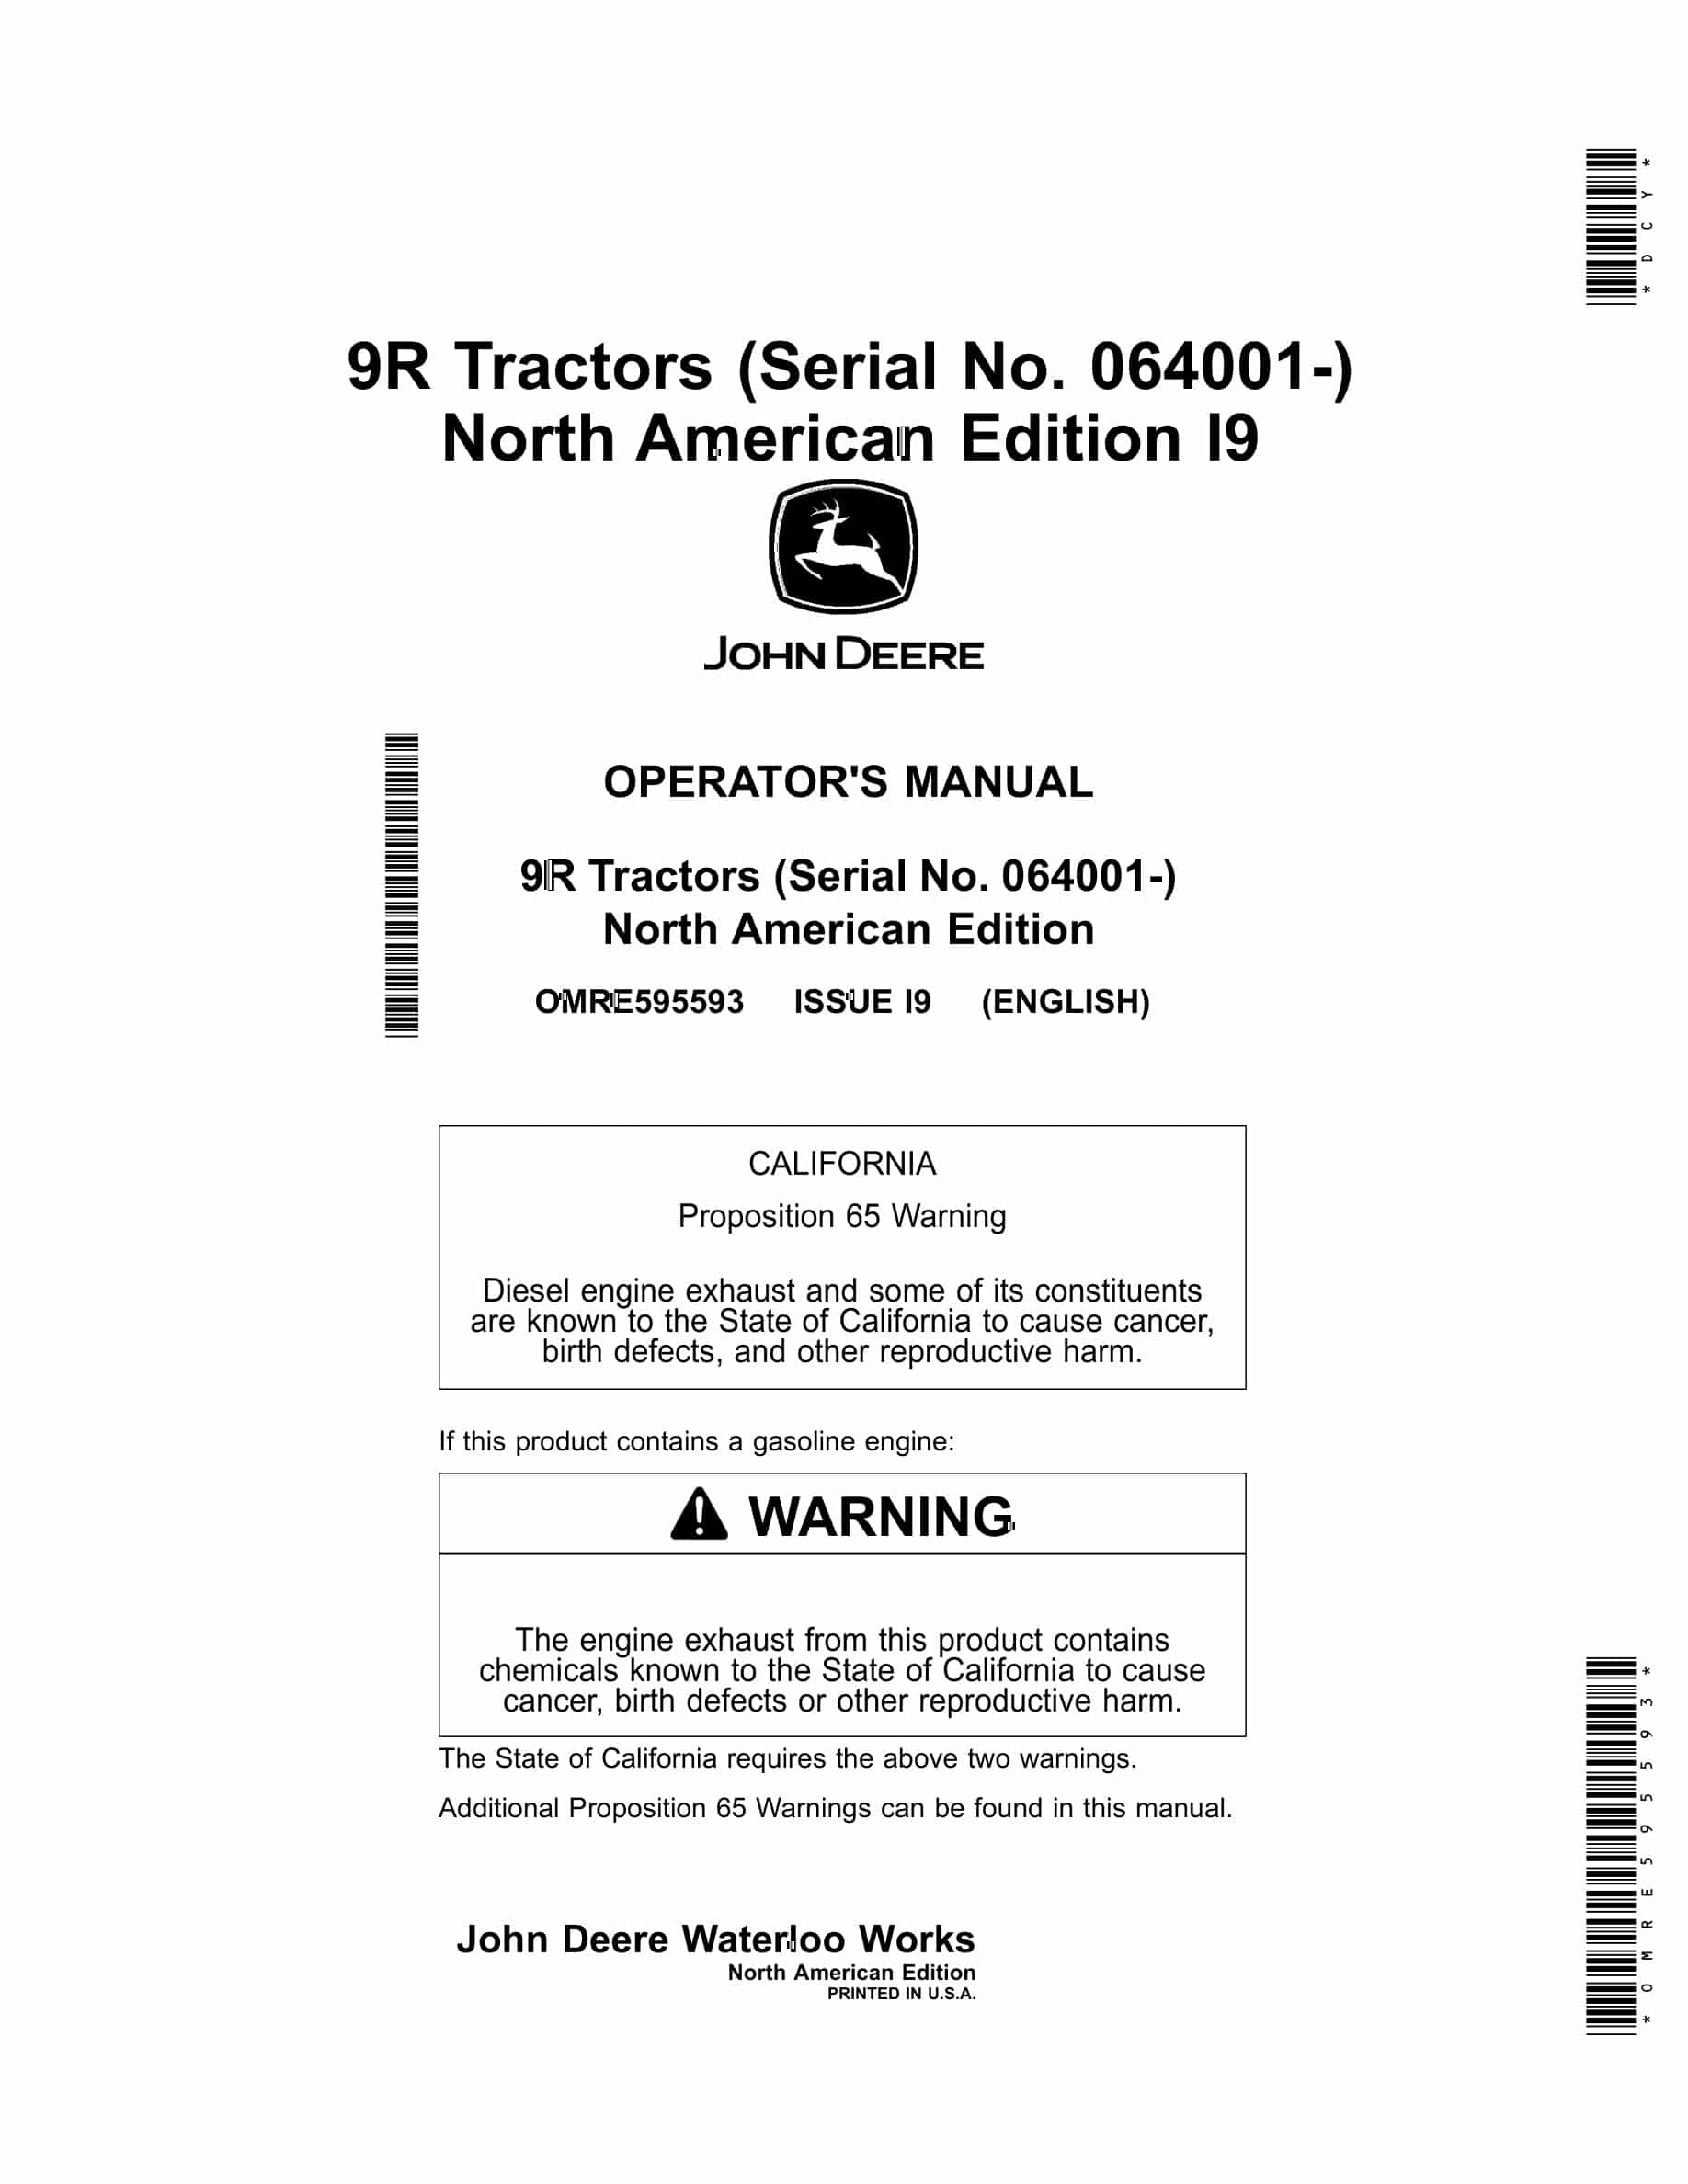 John Deere 9R Tractor Operator Manual OMRE595593-1